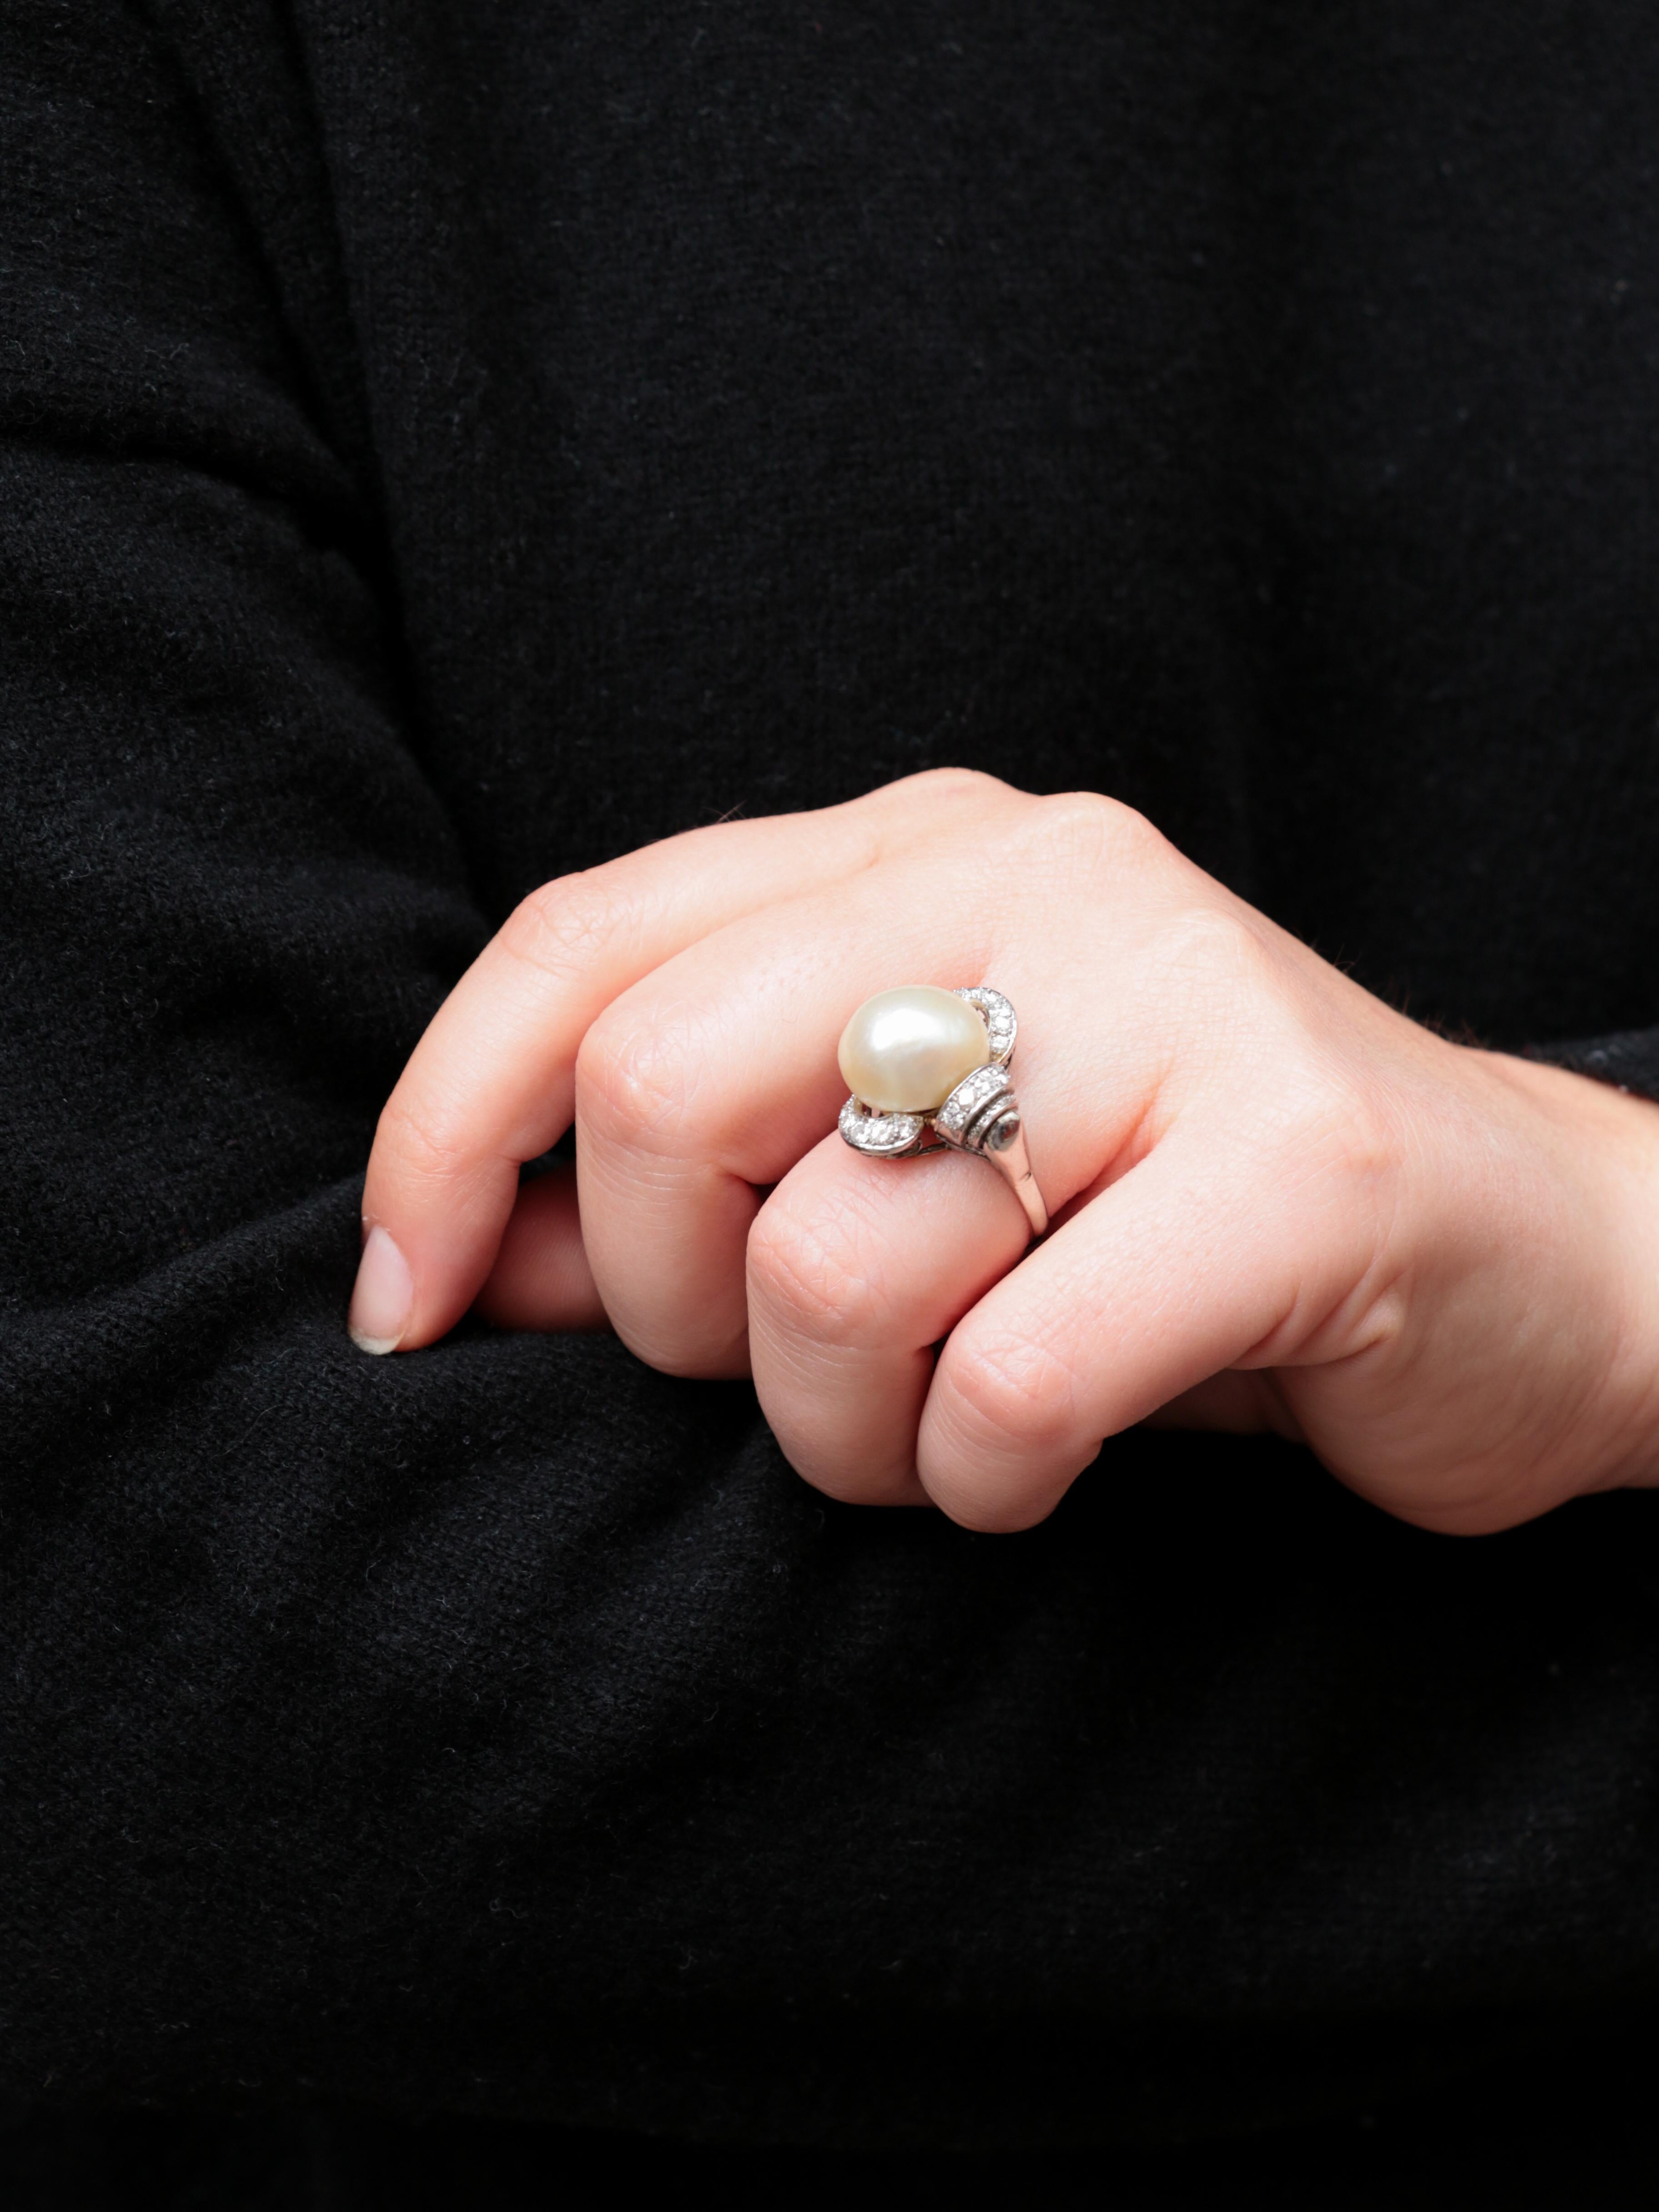 Bague en platine sertie d'une grande perle baroque dans une monture de diamants de forme libre. Le poids total de la monture de diamants est d'environ 0,6 ct, et les pierres sont de belle qualité.
Les perles naturelles dont le diamètre dépasse 10 mm